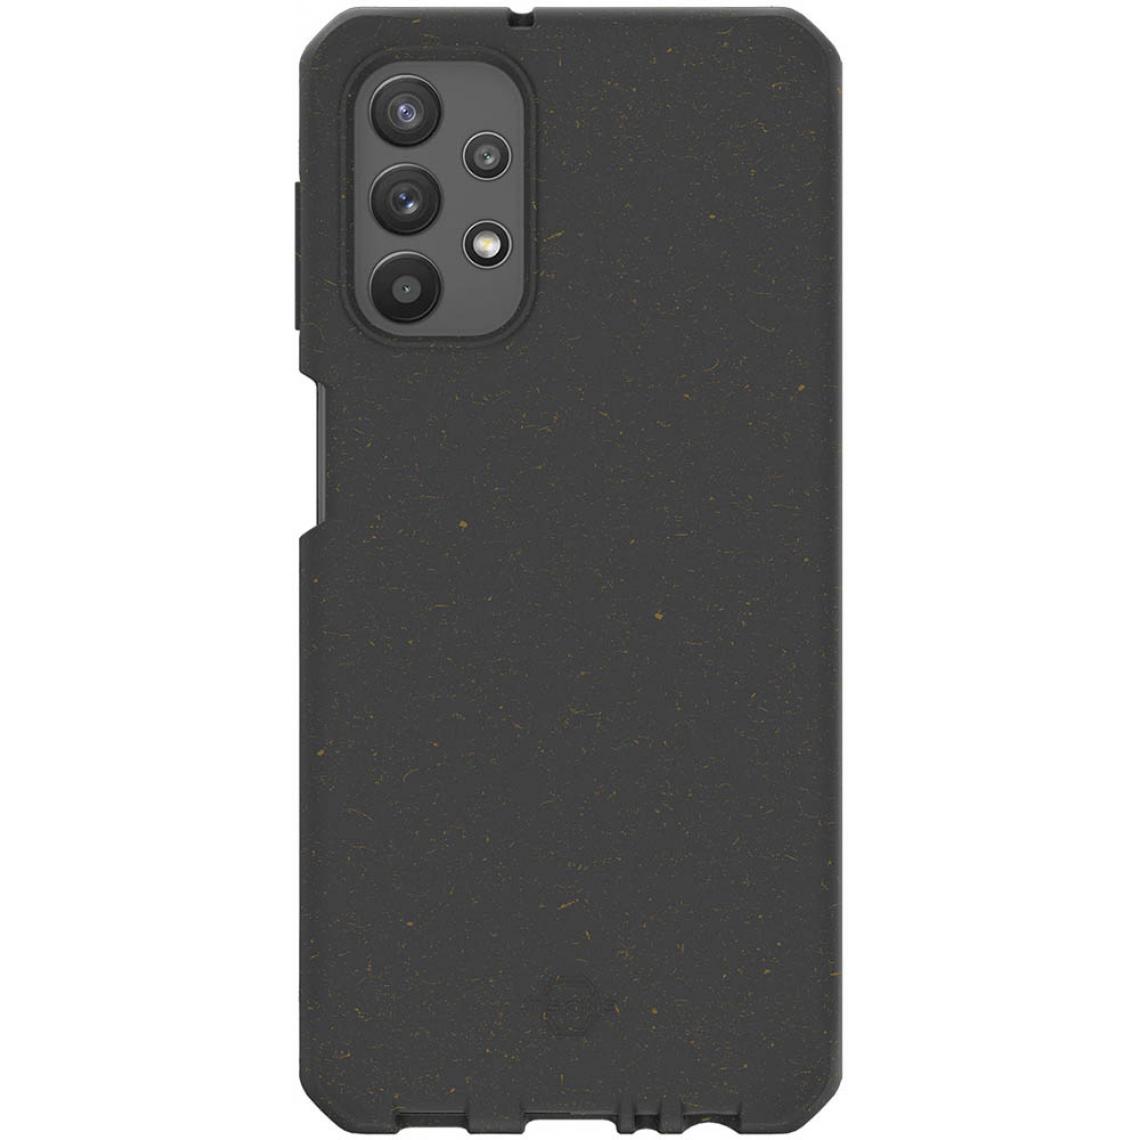 Itskins - ITSKINS ITFERONTERGA325GBK - Coque FERONIA BIO TERRA Noir Galaxy A32 5G - Coque, étui smartphone